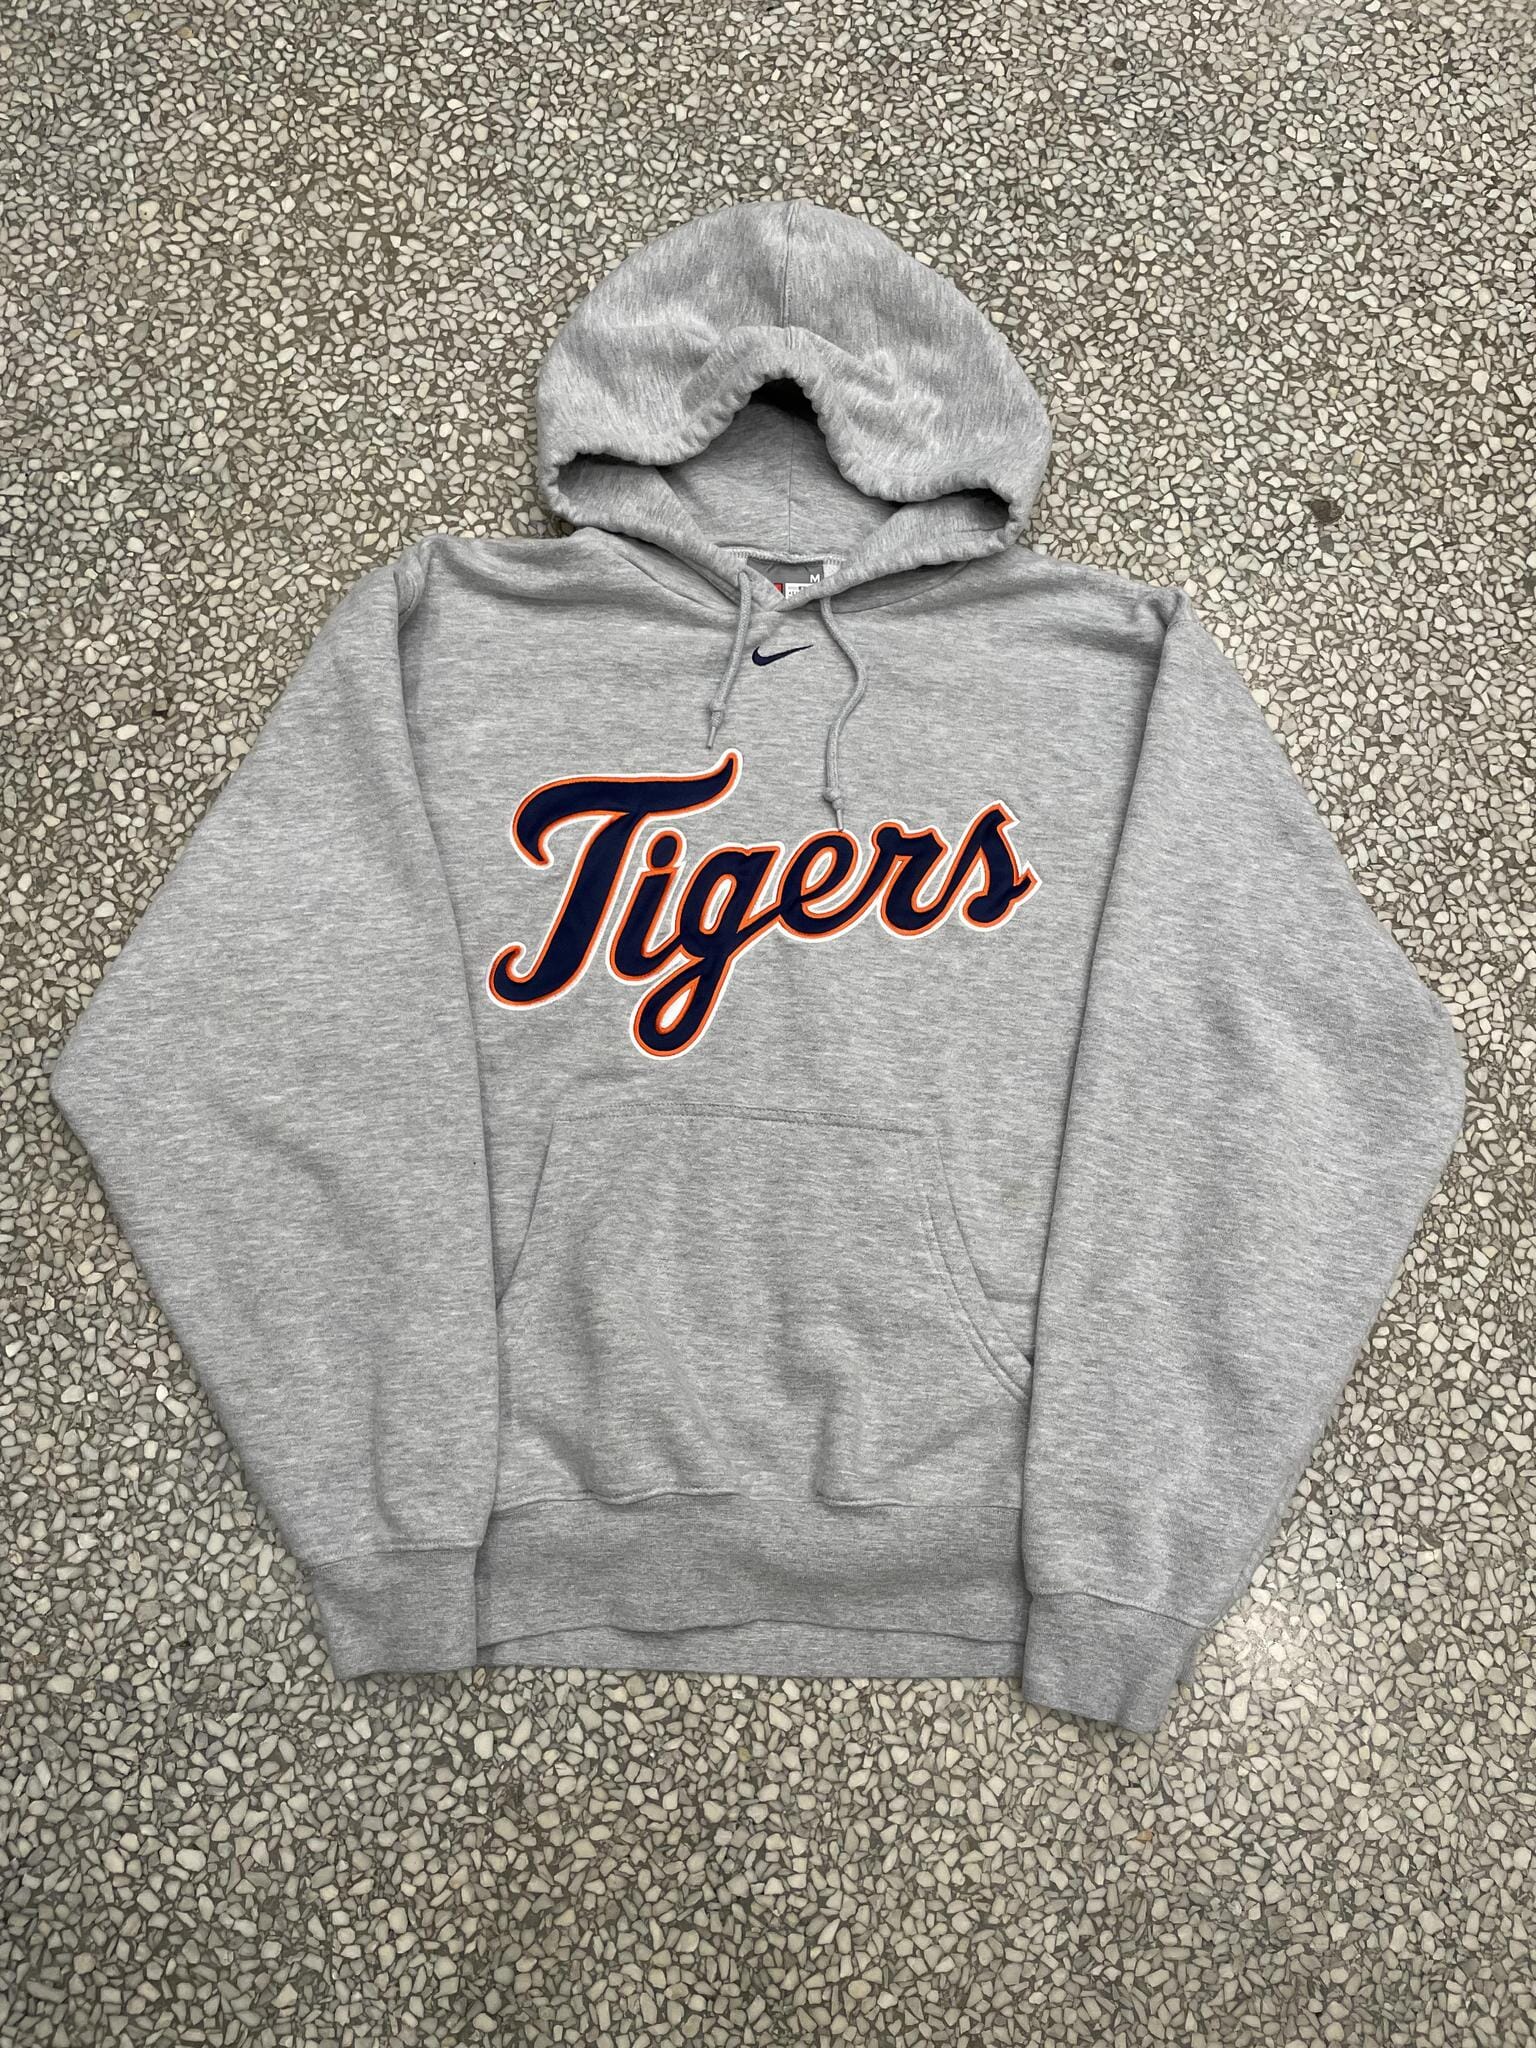 Detroit Tigers Nike Vintage 90s Hoodie Grey